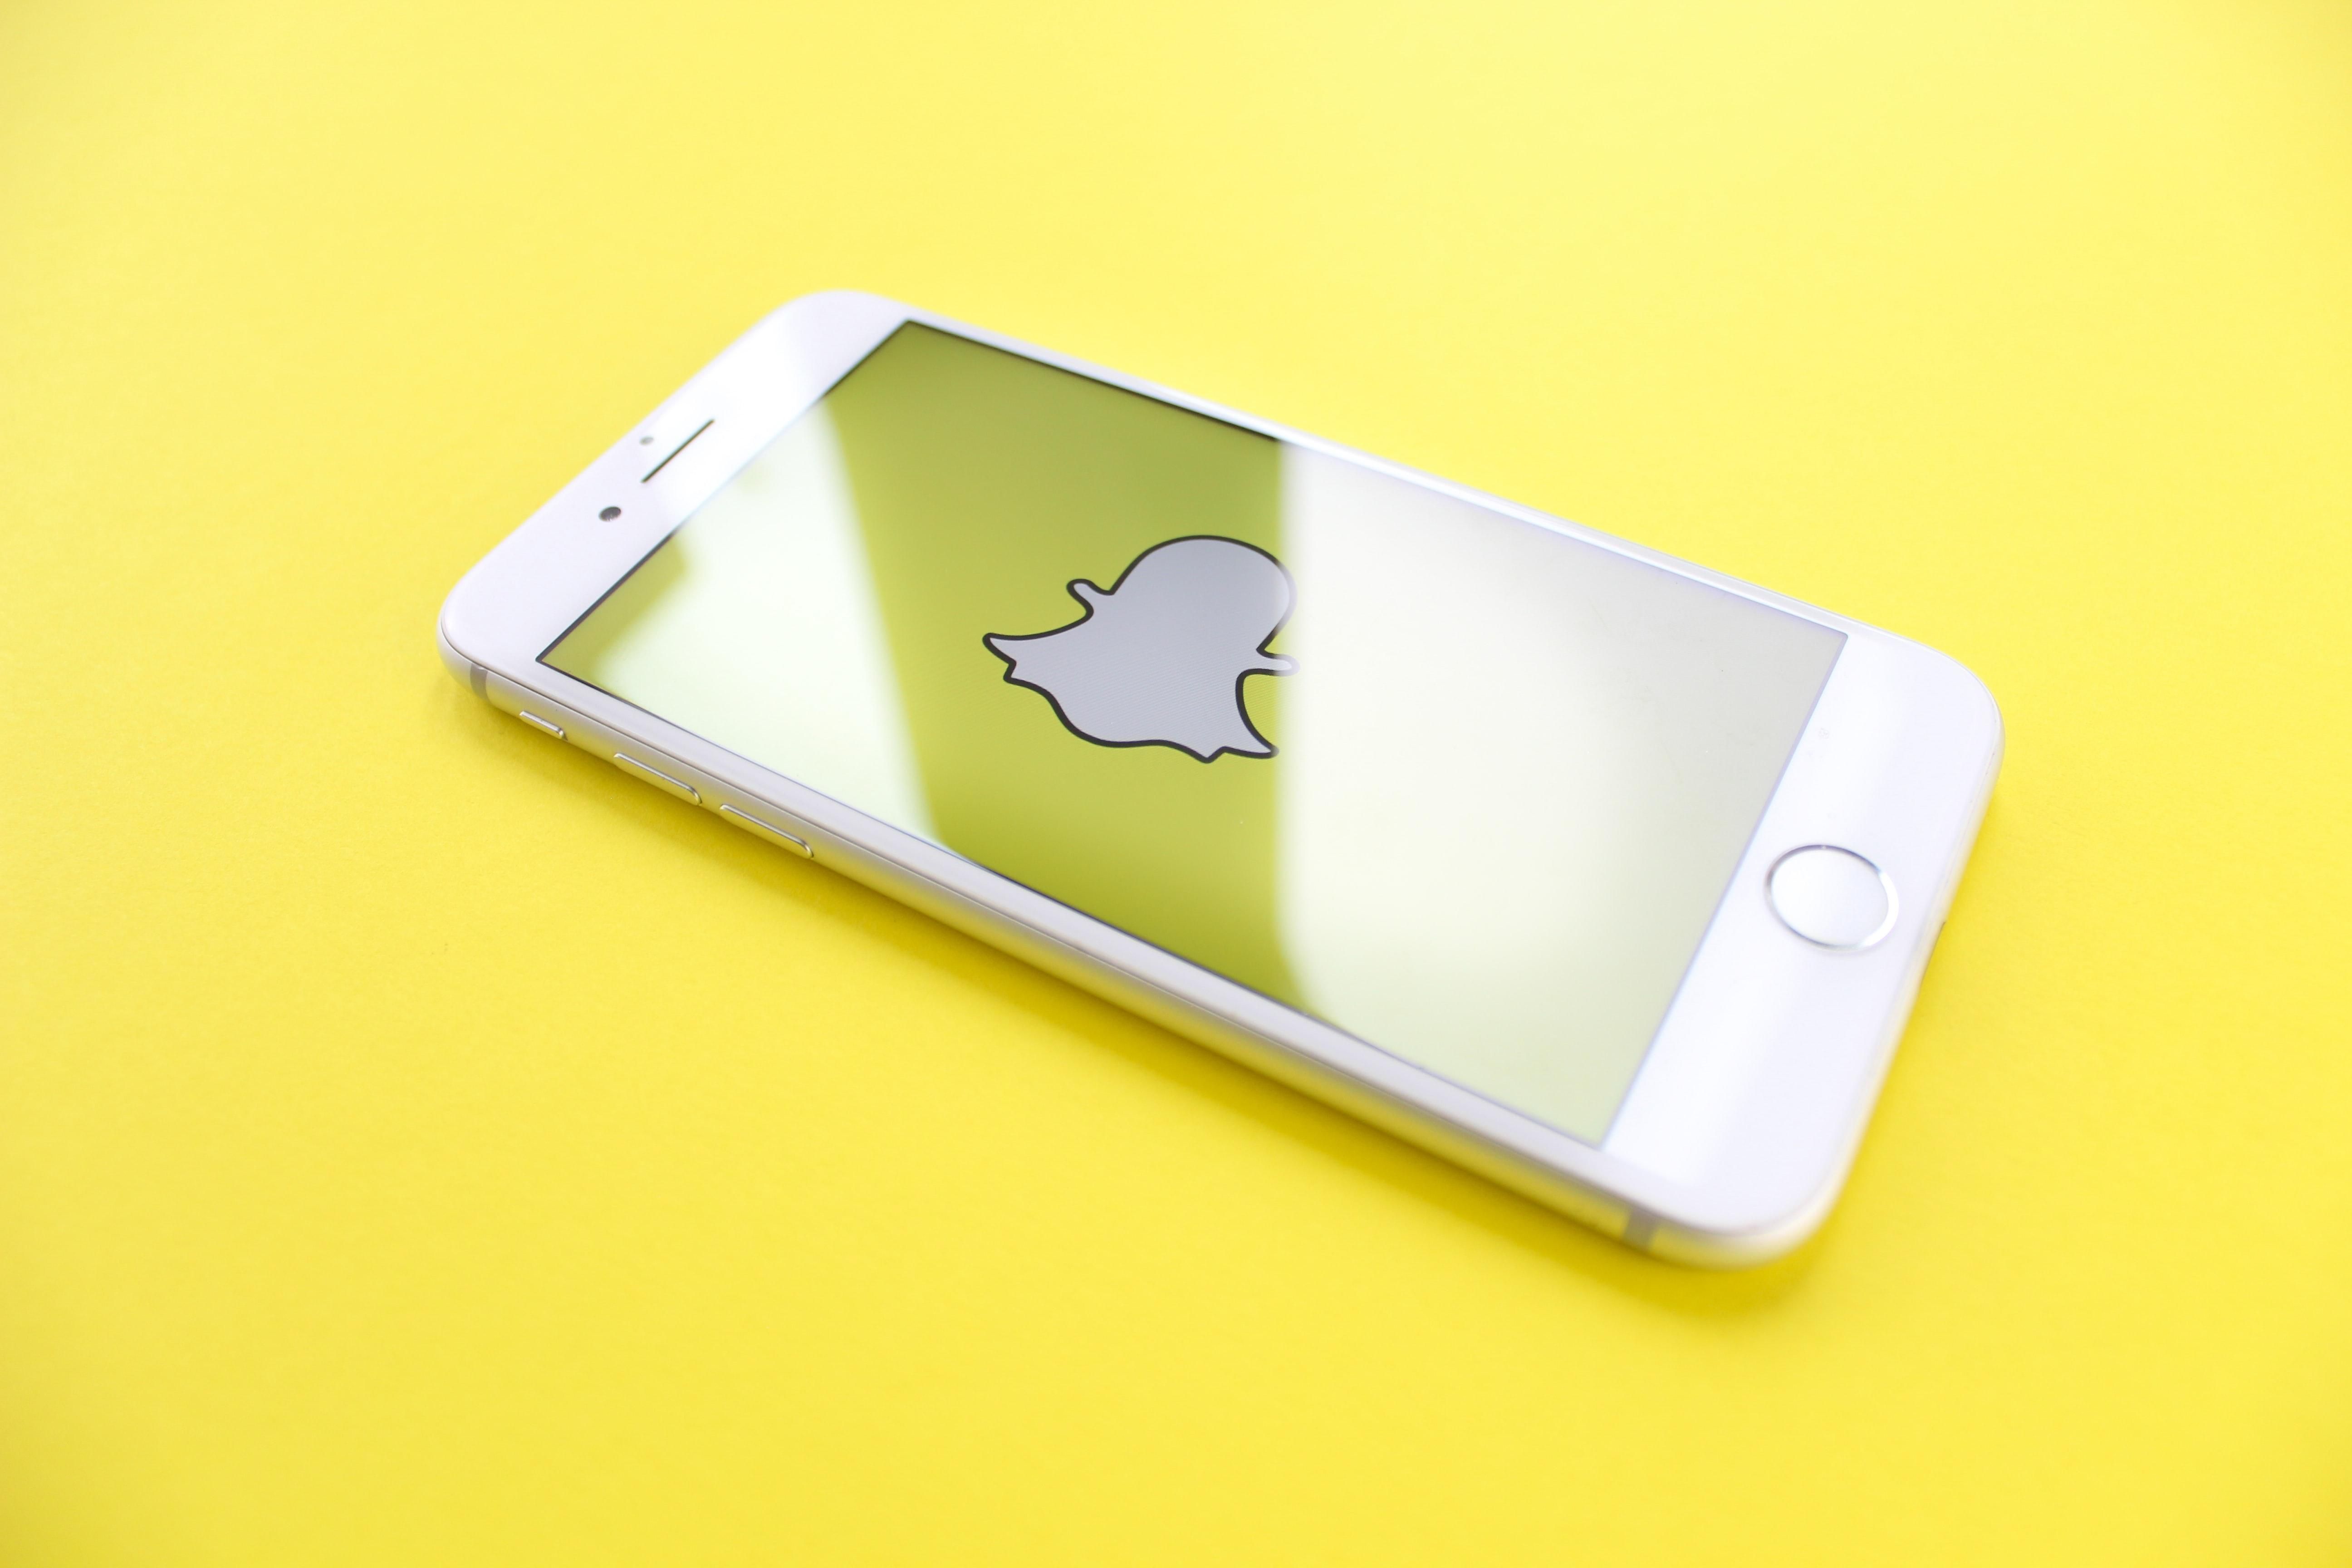 Нова функція від Snapchat підбирає рецепти страв залежно від продуктів, які у вас є - новини мобільних телефонів - Техно